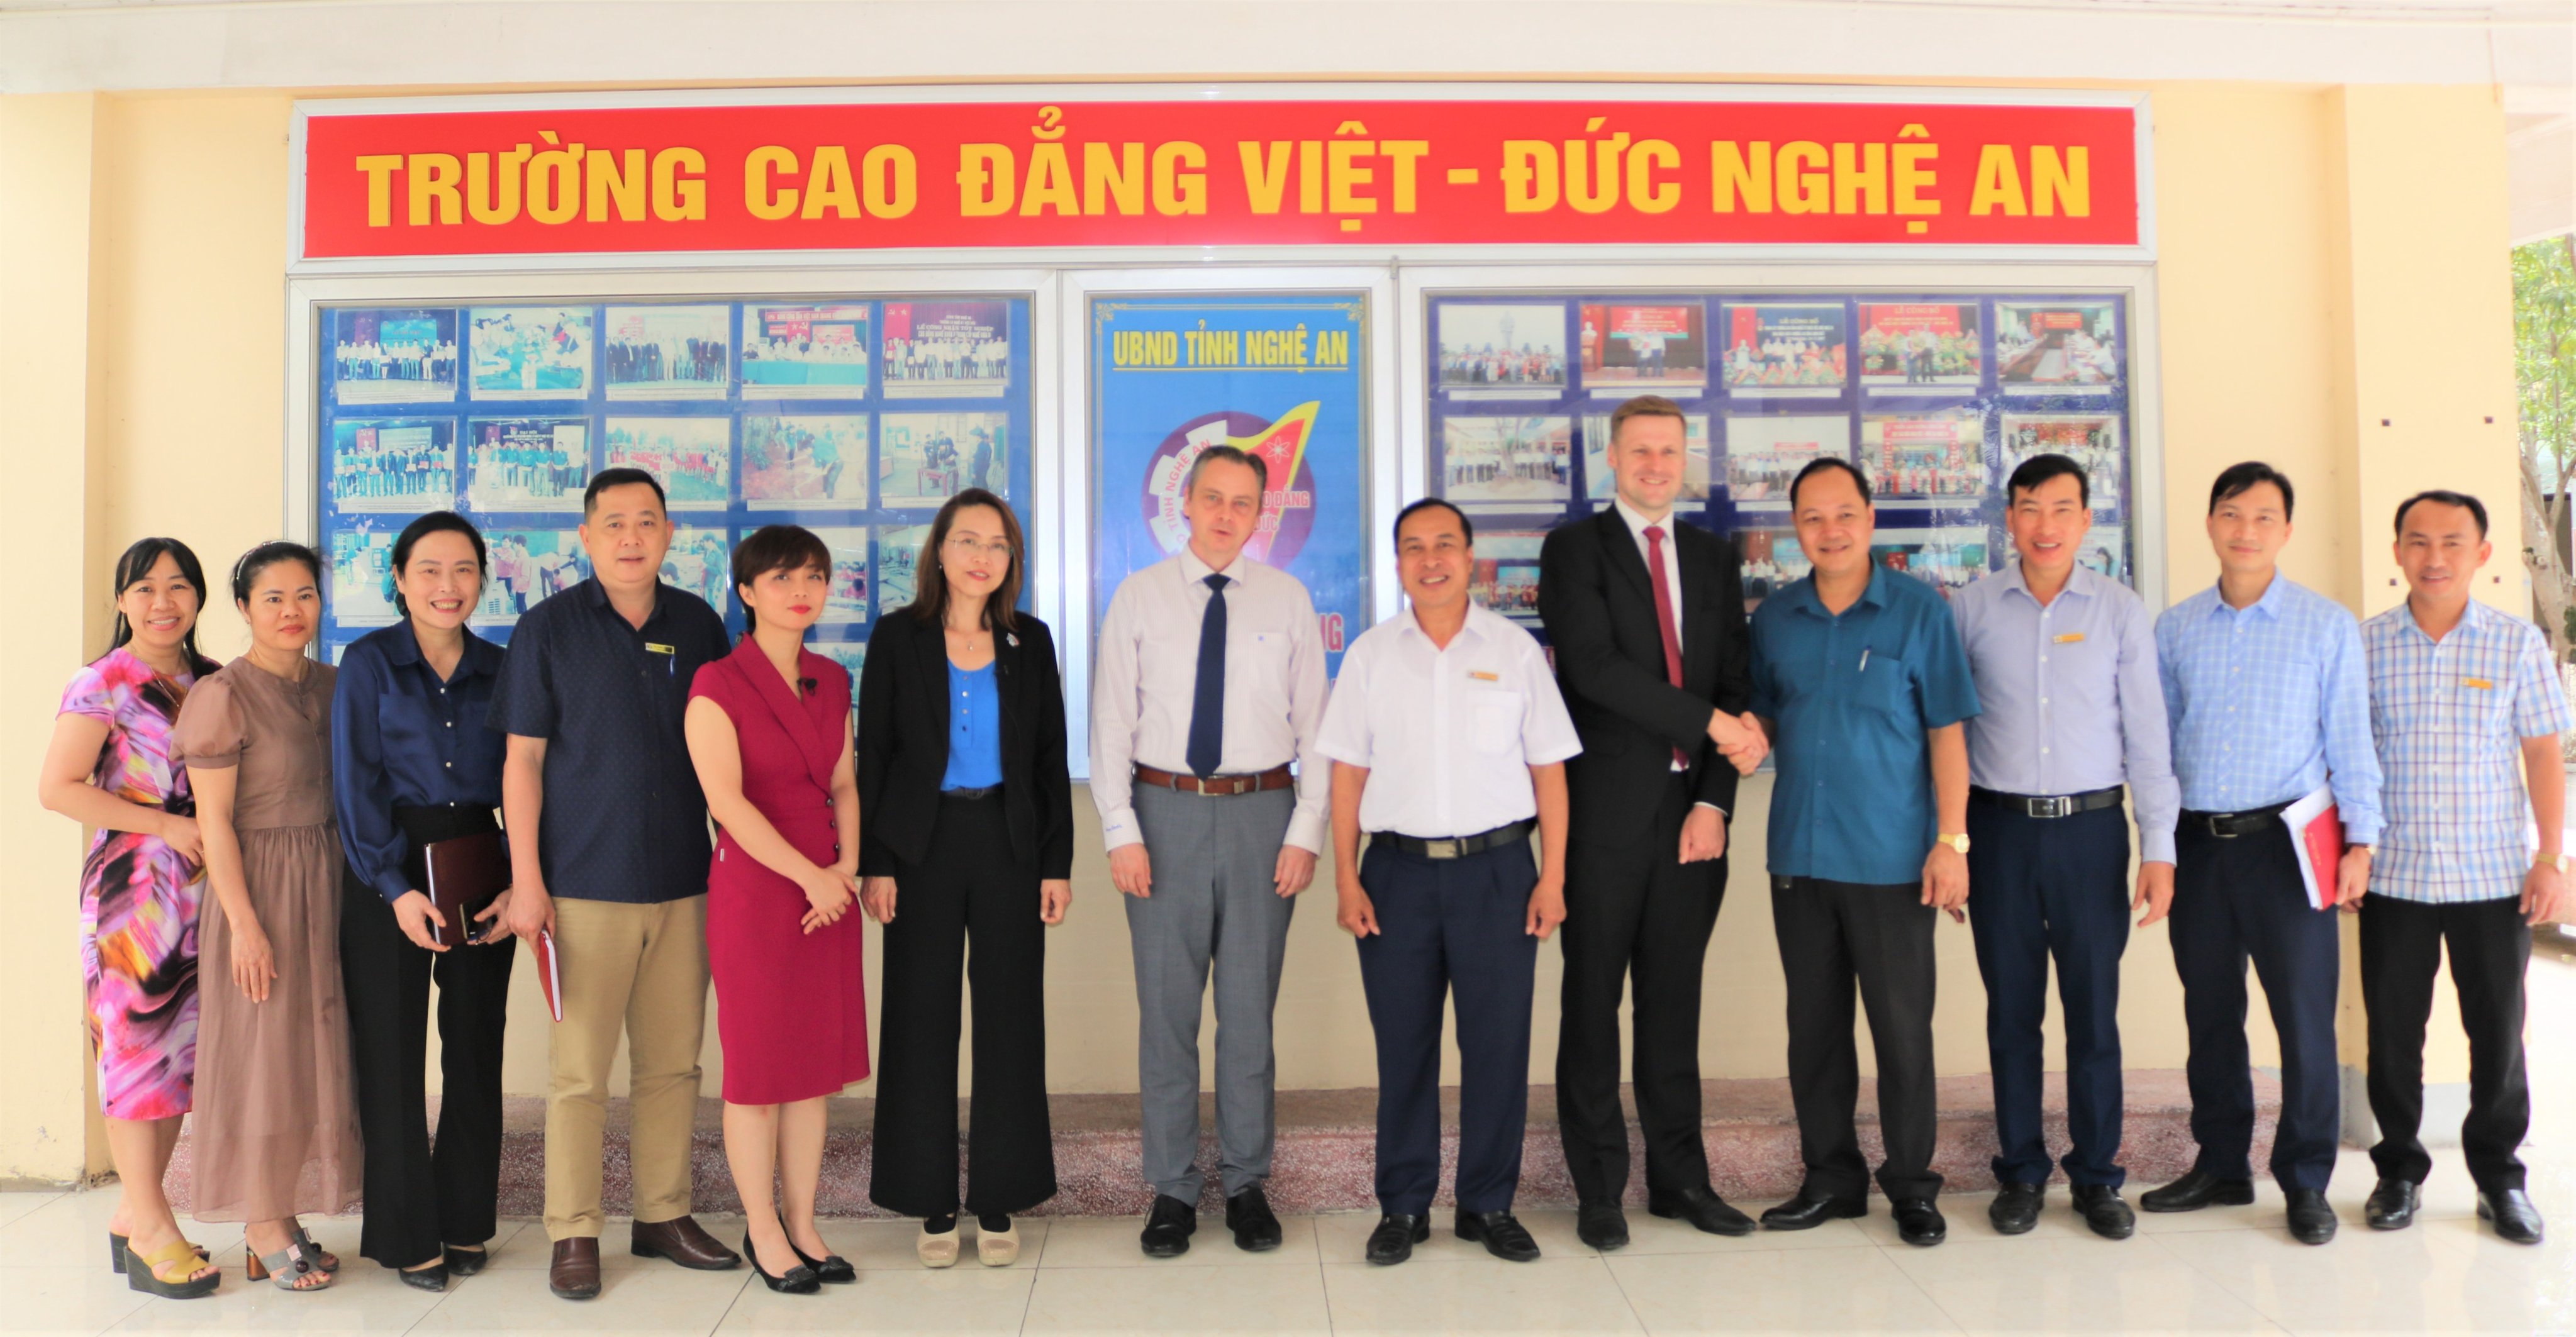  Trường Cao đẳng Việt – Đức Nghệ An làm việc với Đoàn công tác của phòng Công nghiệp và Thương mại Đức